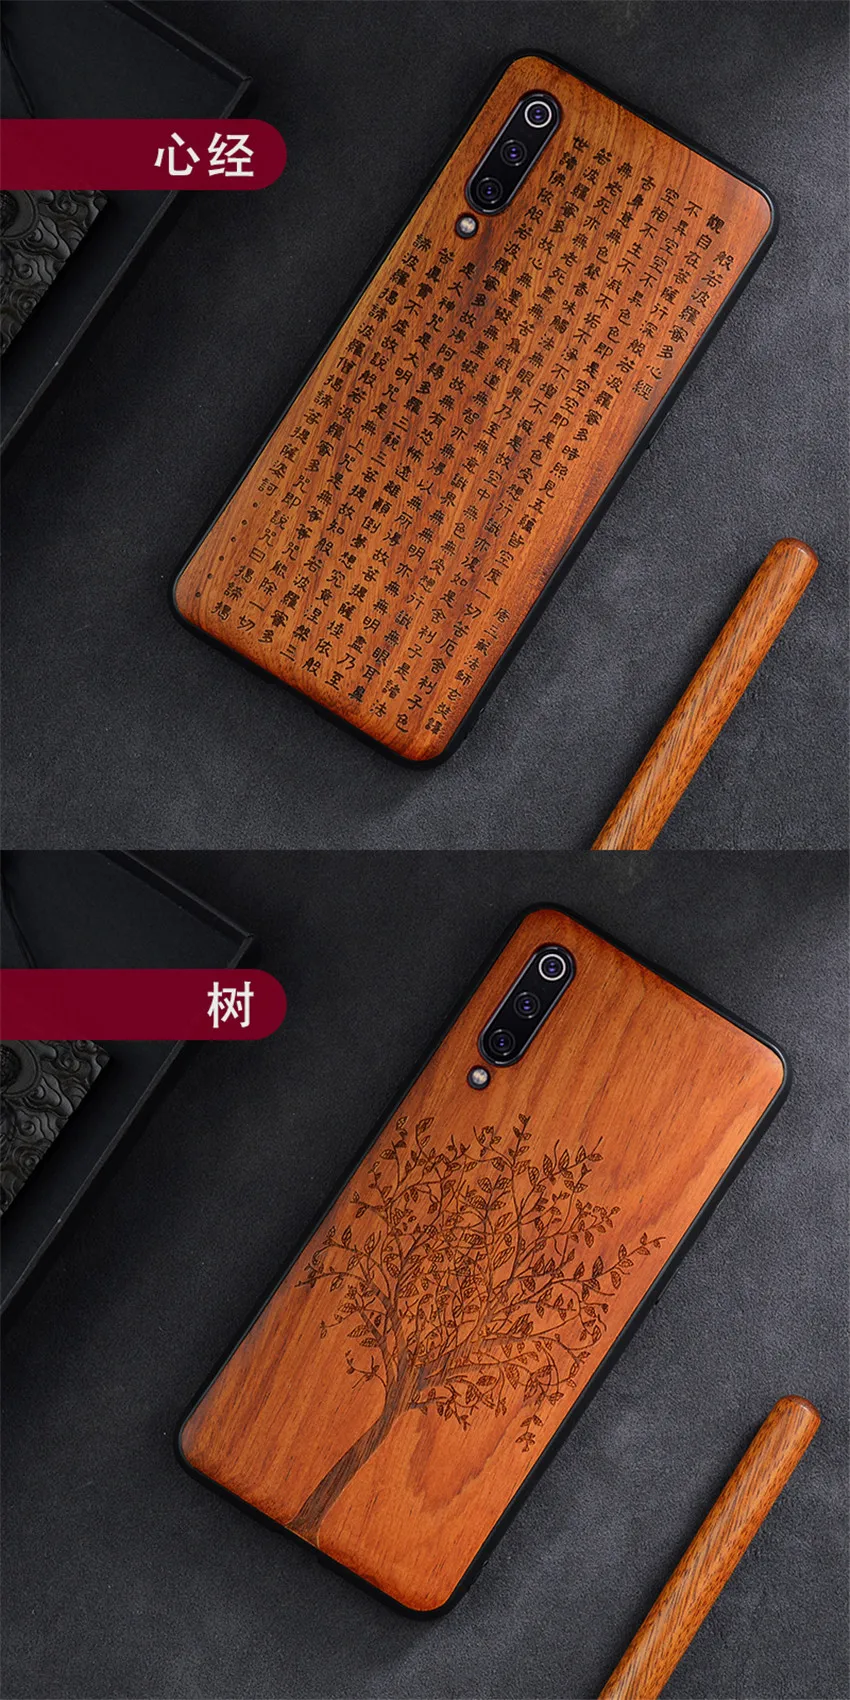 2019 New For Xiaomi Mi 9 Case Slim Wood Back Cover TPU Bumper Case On Xiaomi Mi 9 Xiomi Mi9 SE Phone Cases (10)